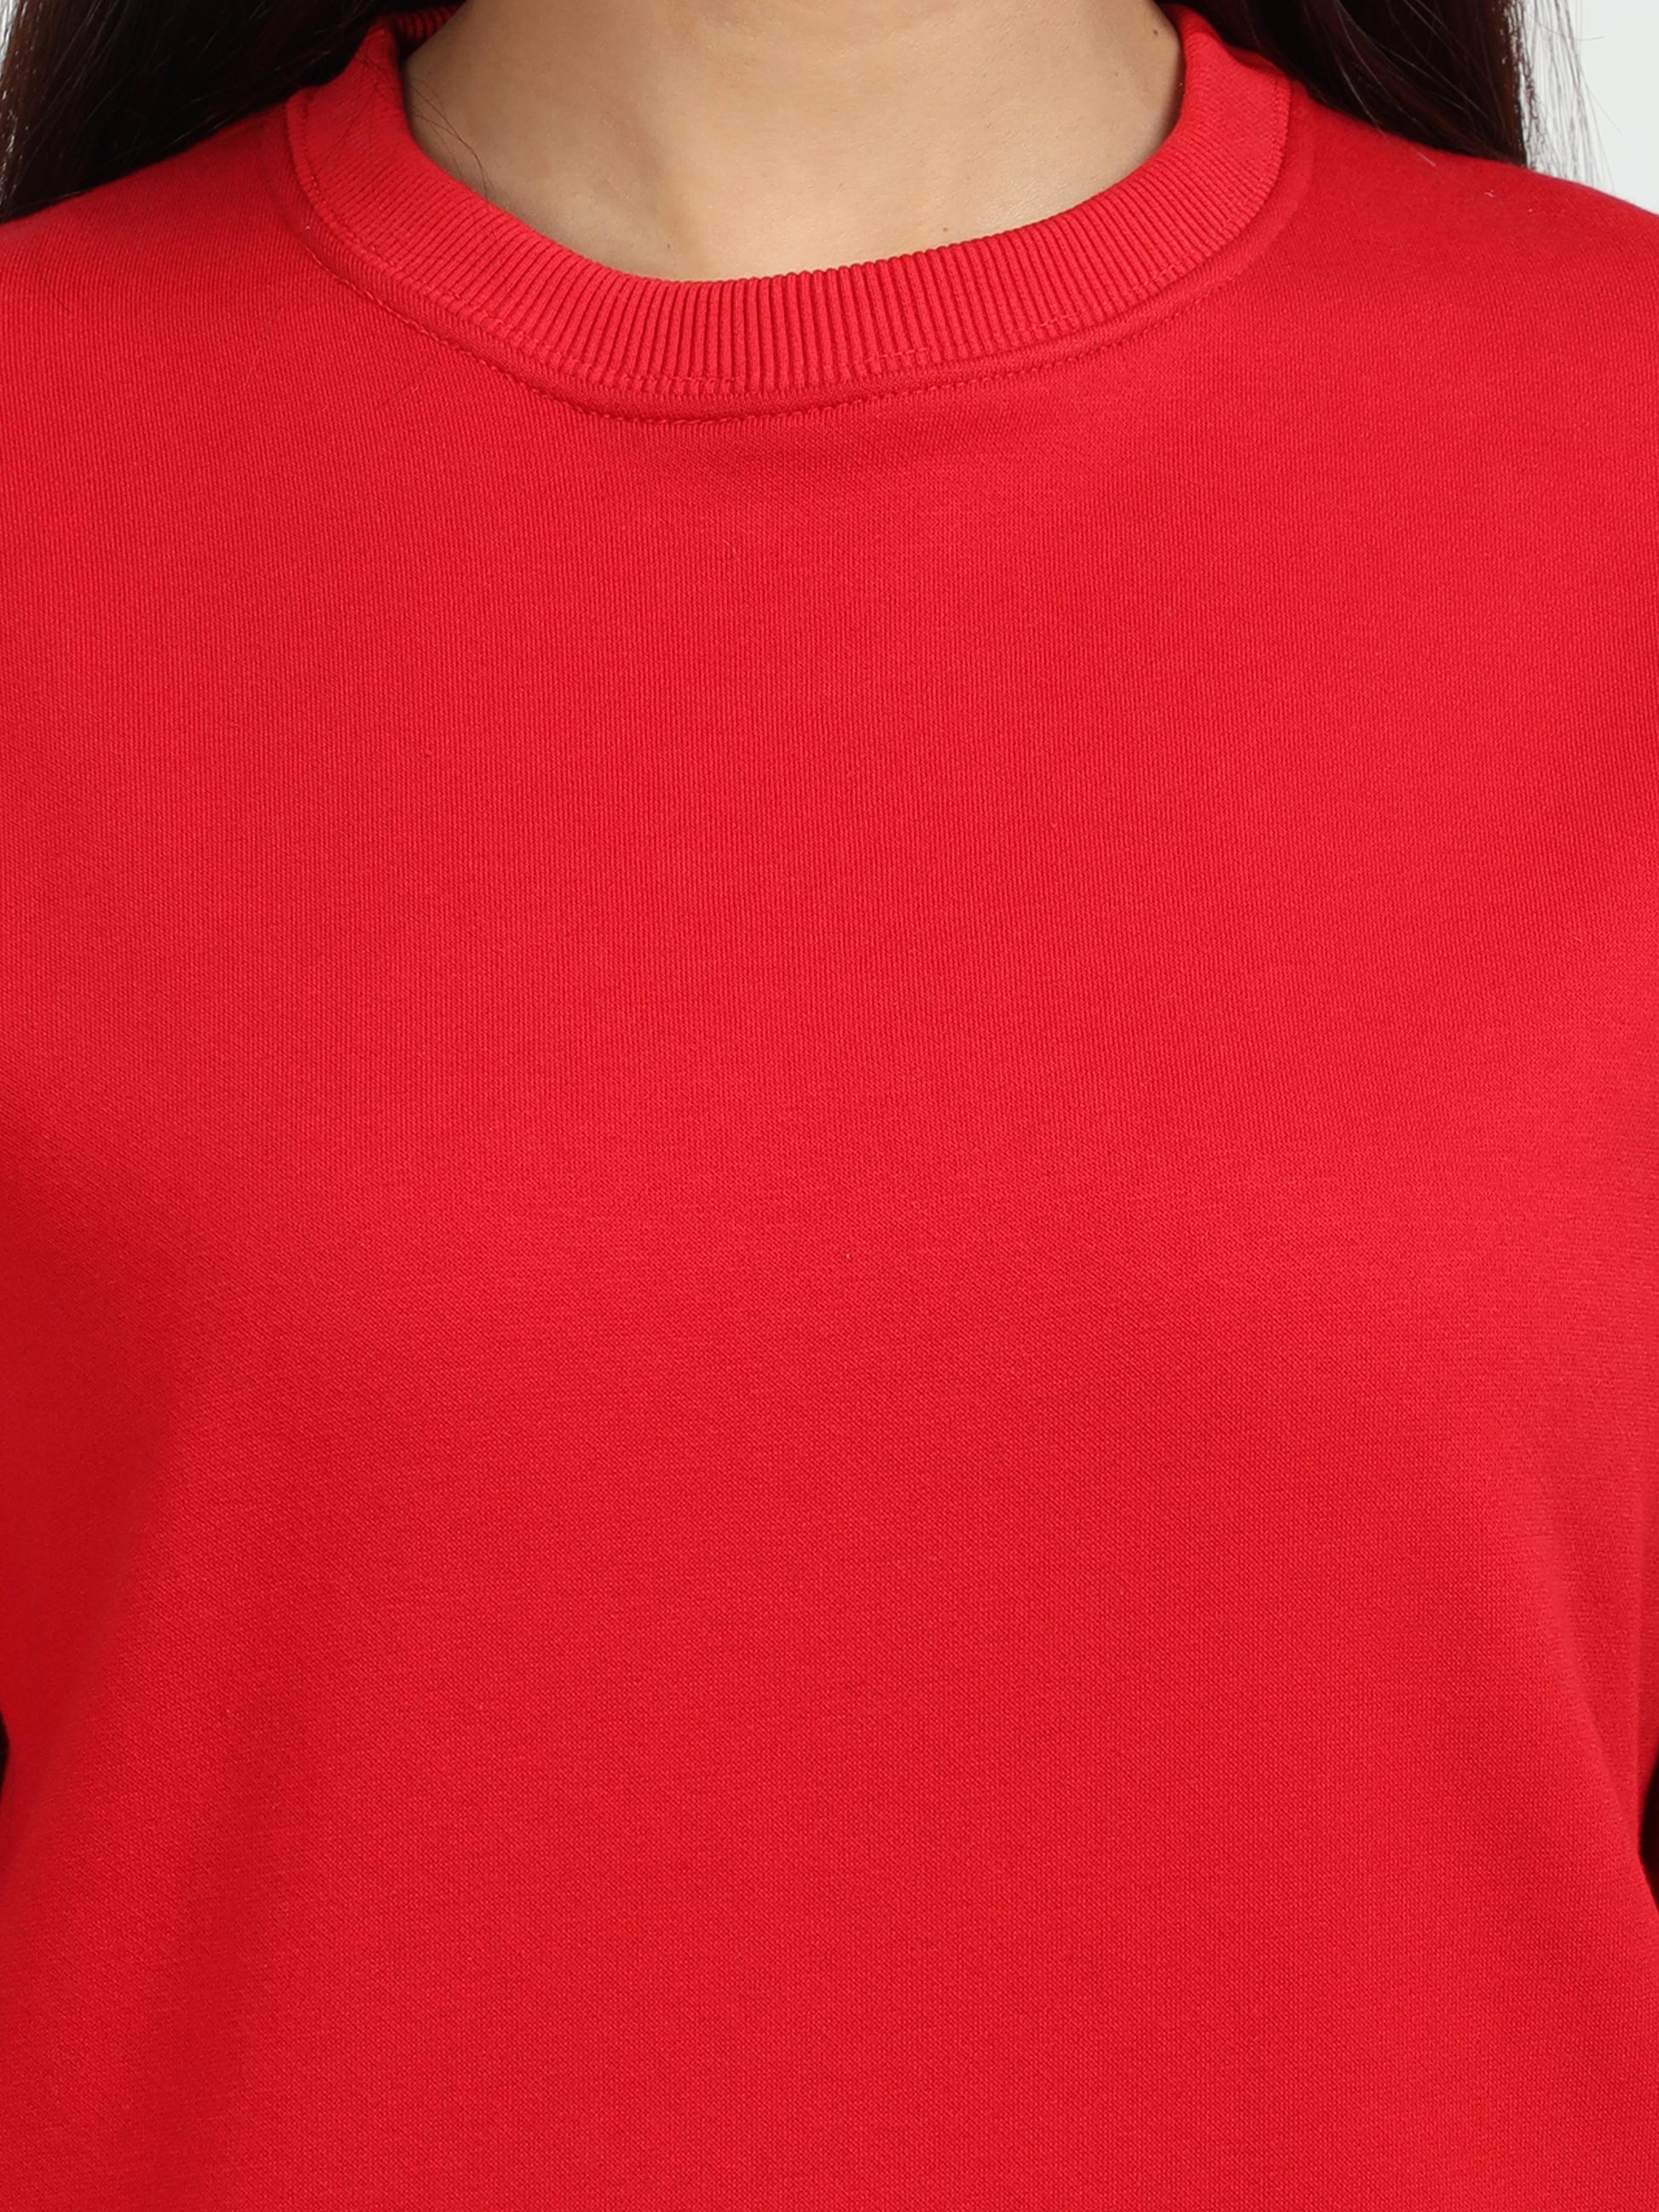 Red Round Neck Sweatshirt